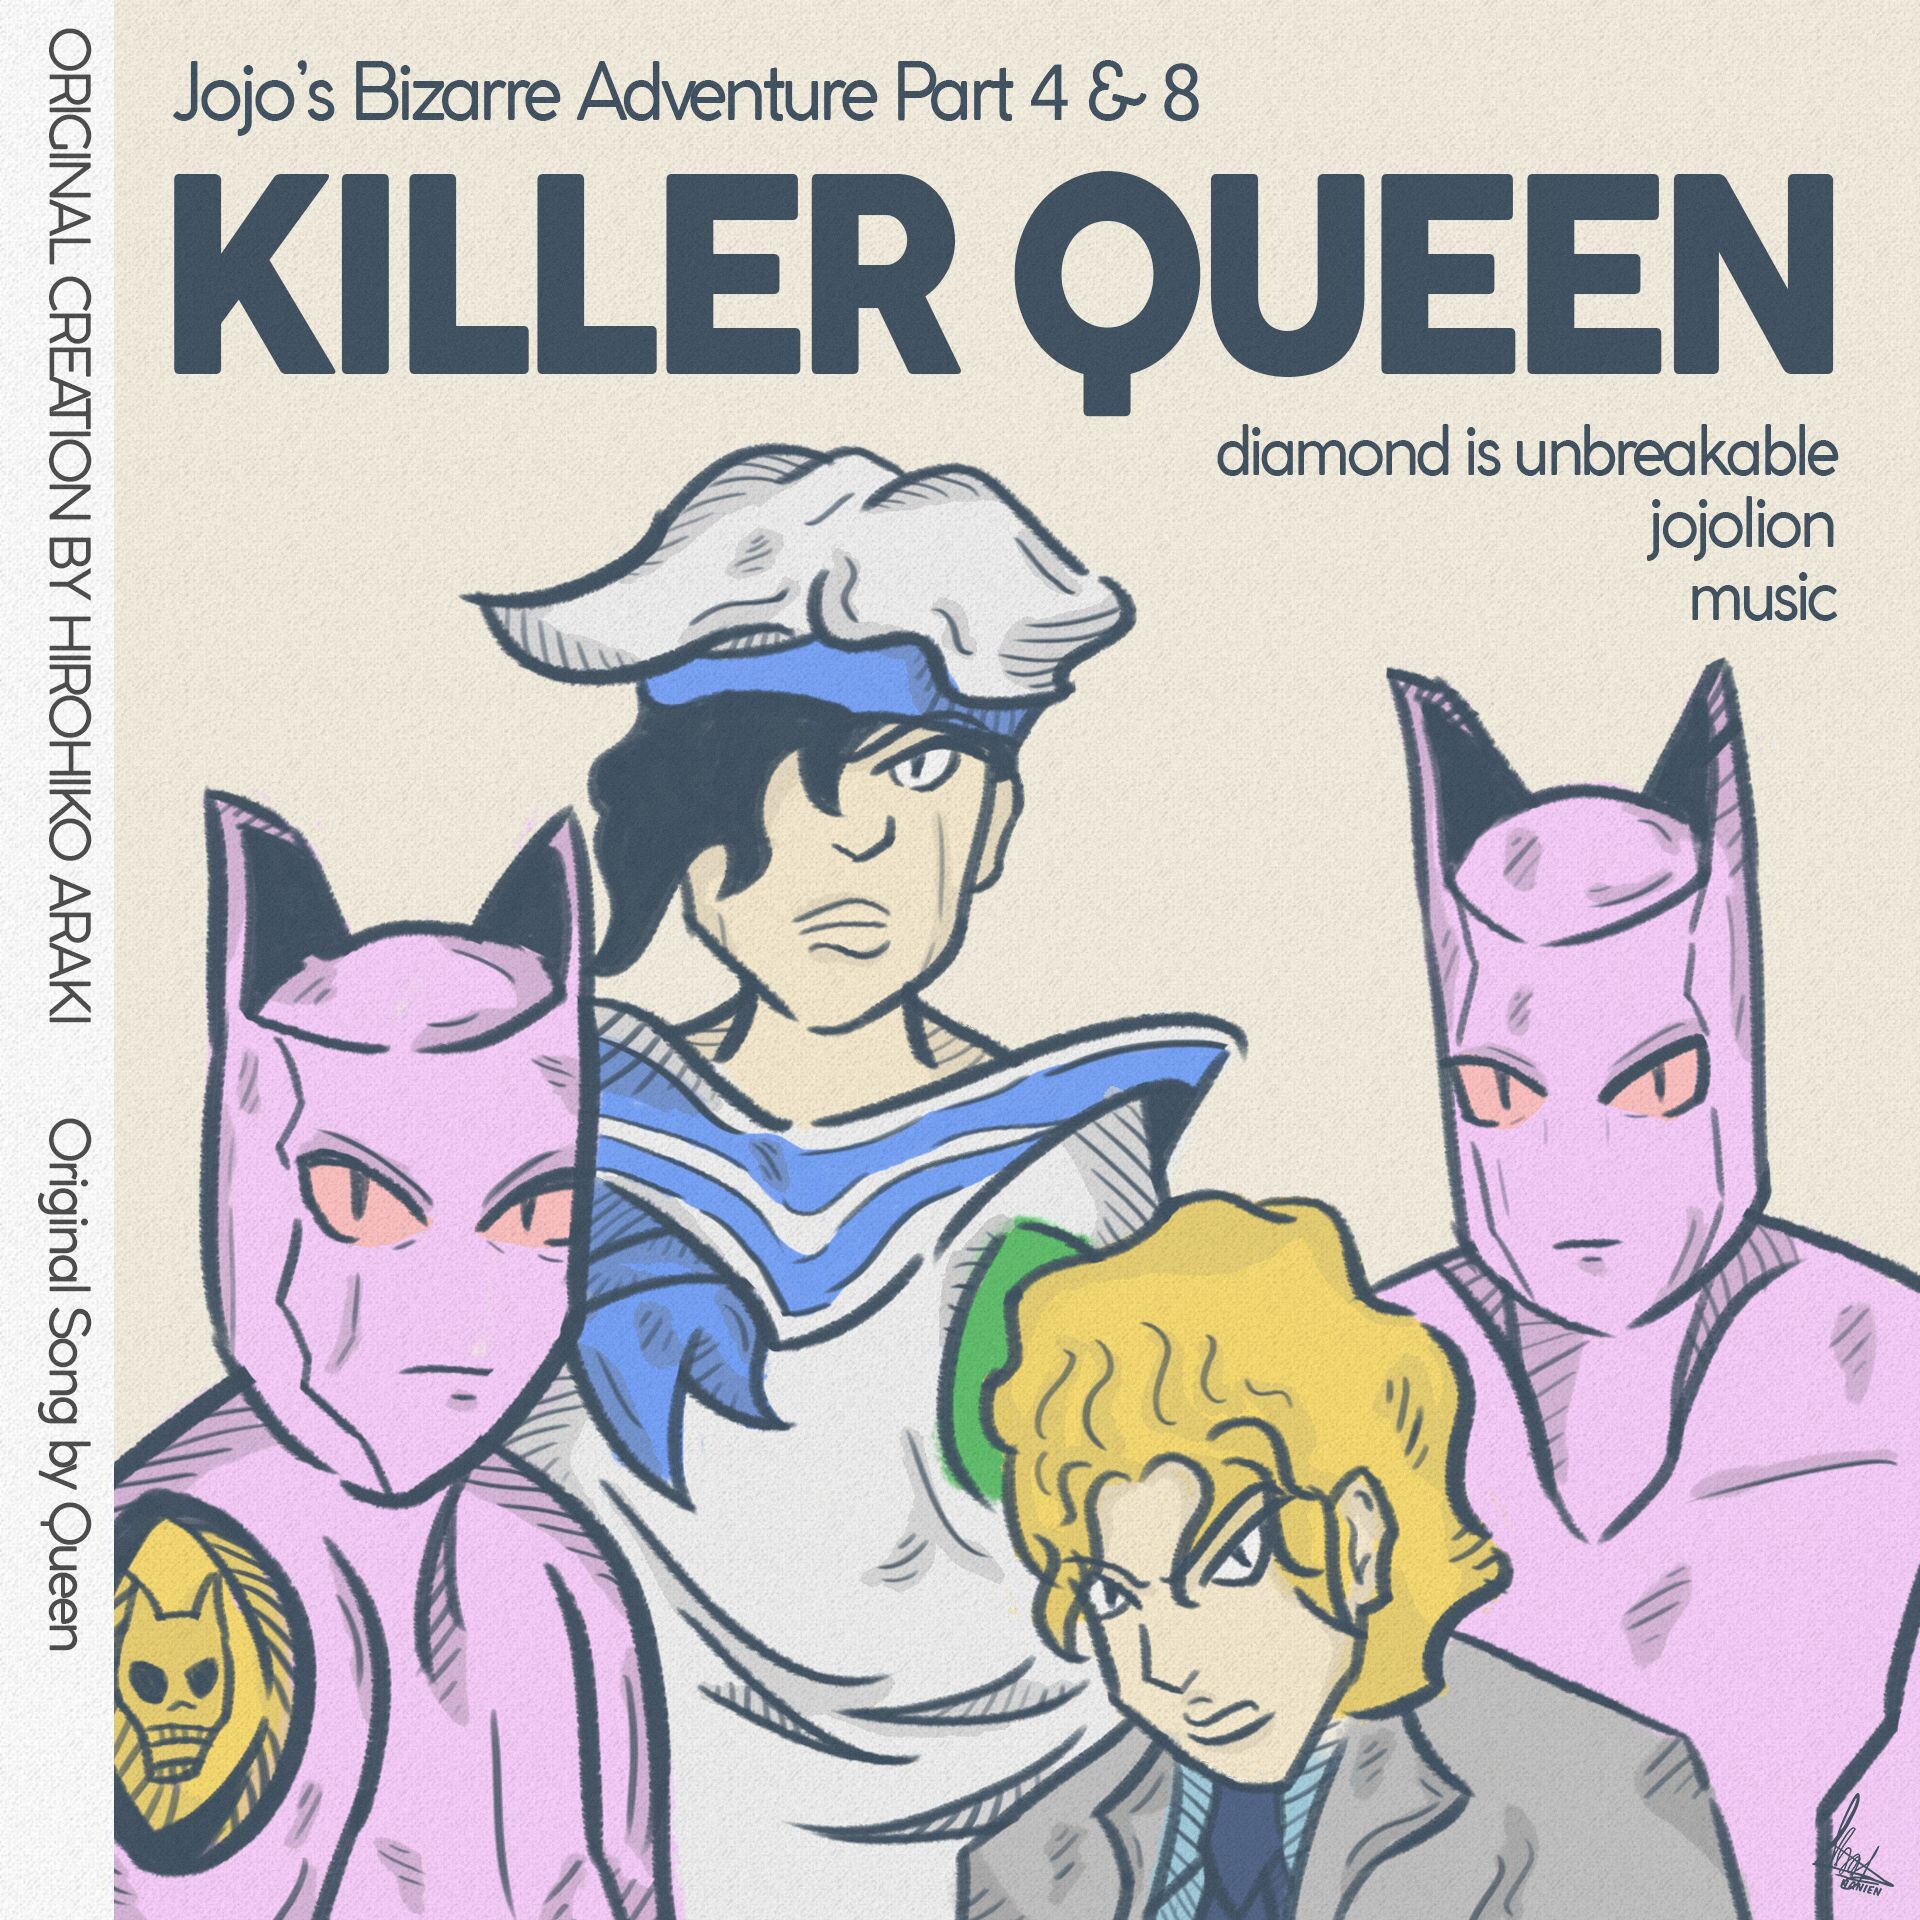 ArtStation - Killer queen - Jojo's bizarre adventure fanart